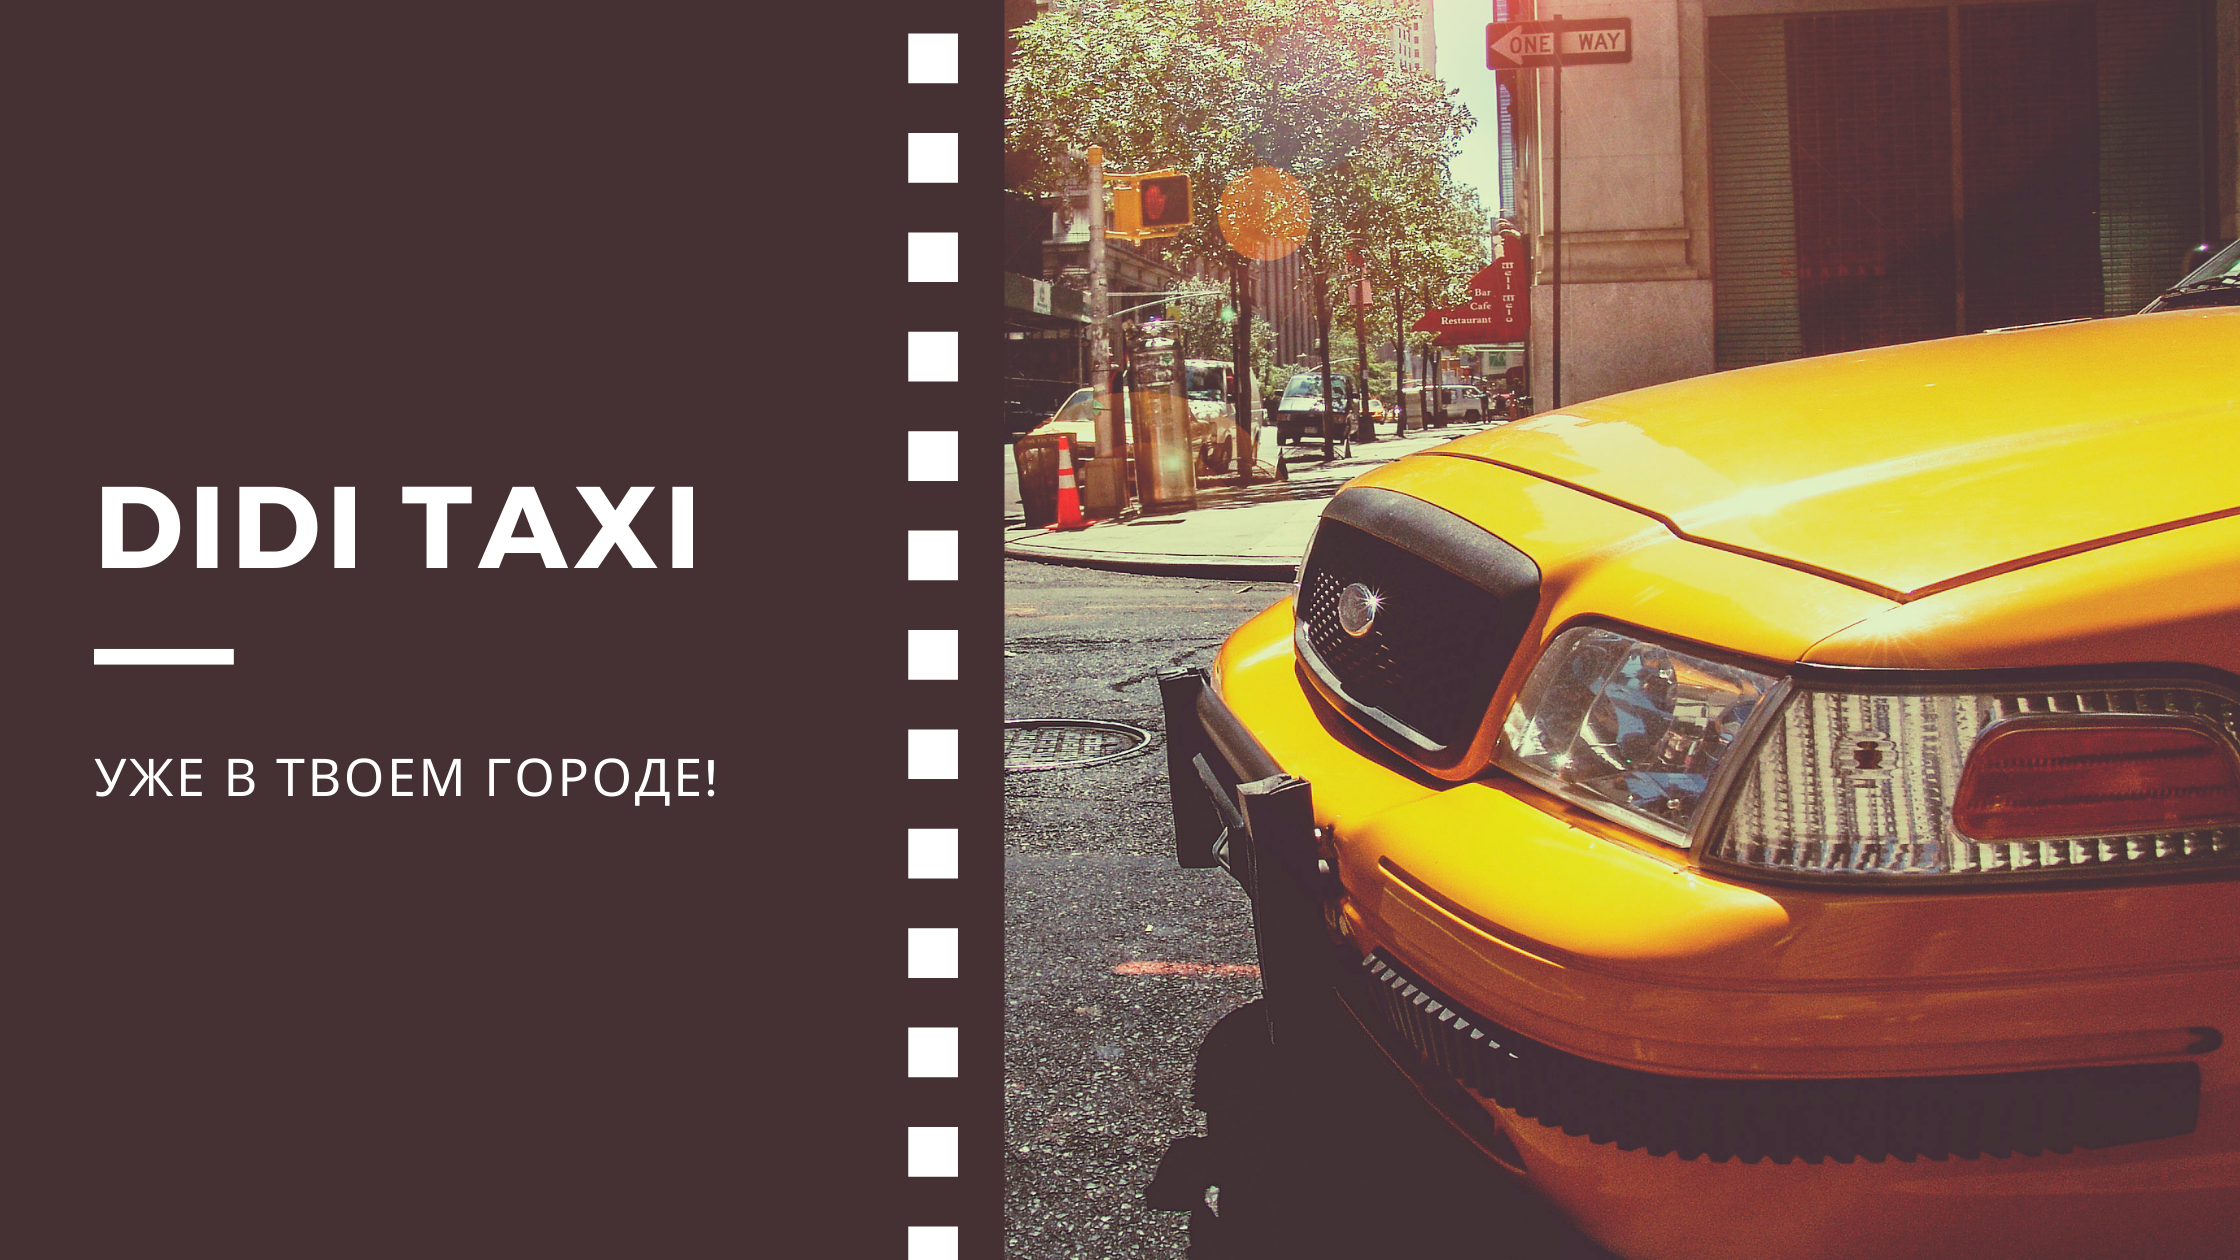 Как осуществляются выплаты в DiDi такси?